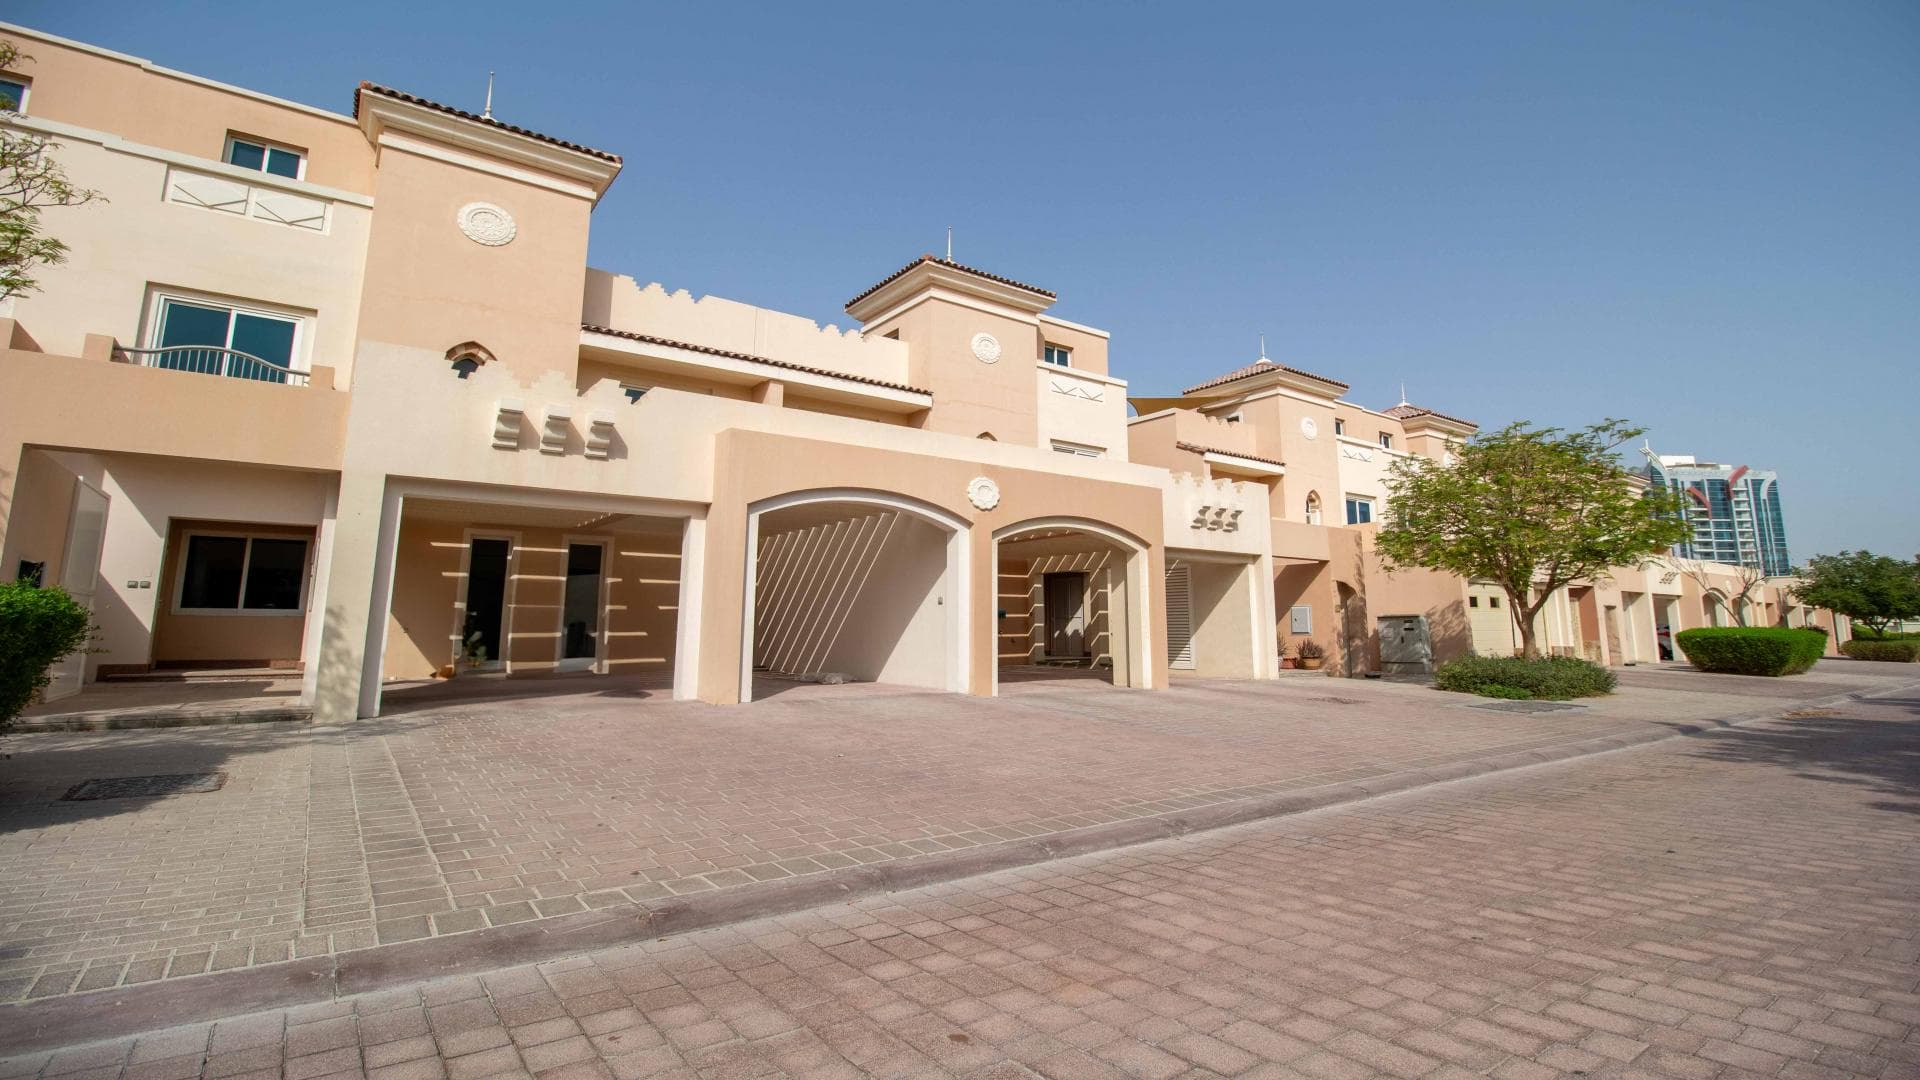 4 Bedroom Villa For Rent Al Thamam 35 Lp36674 2e89433a94dd6000.jpg